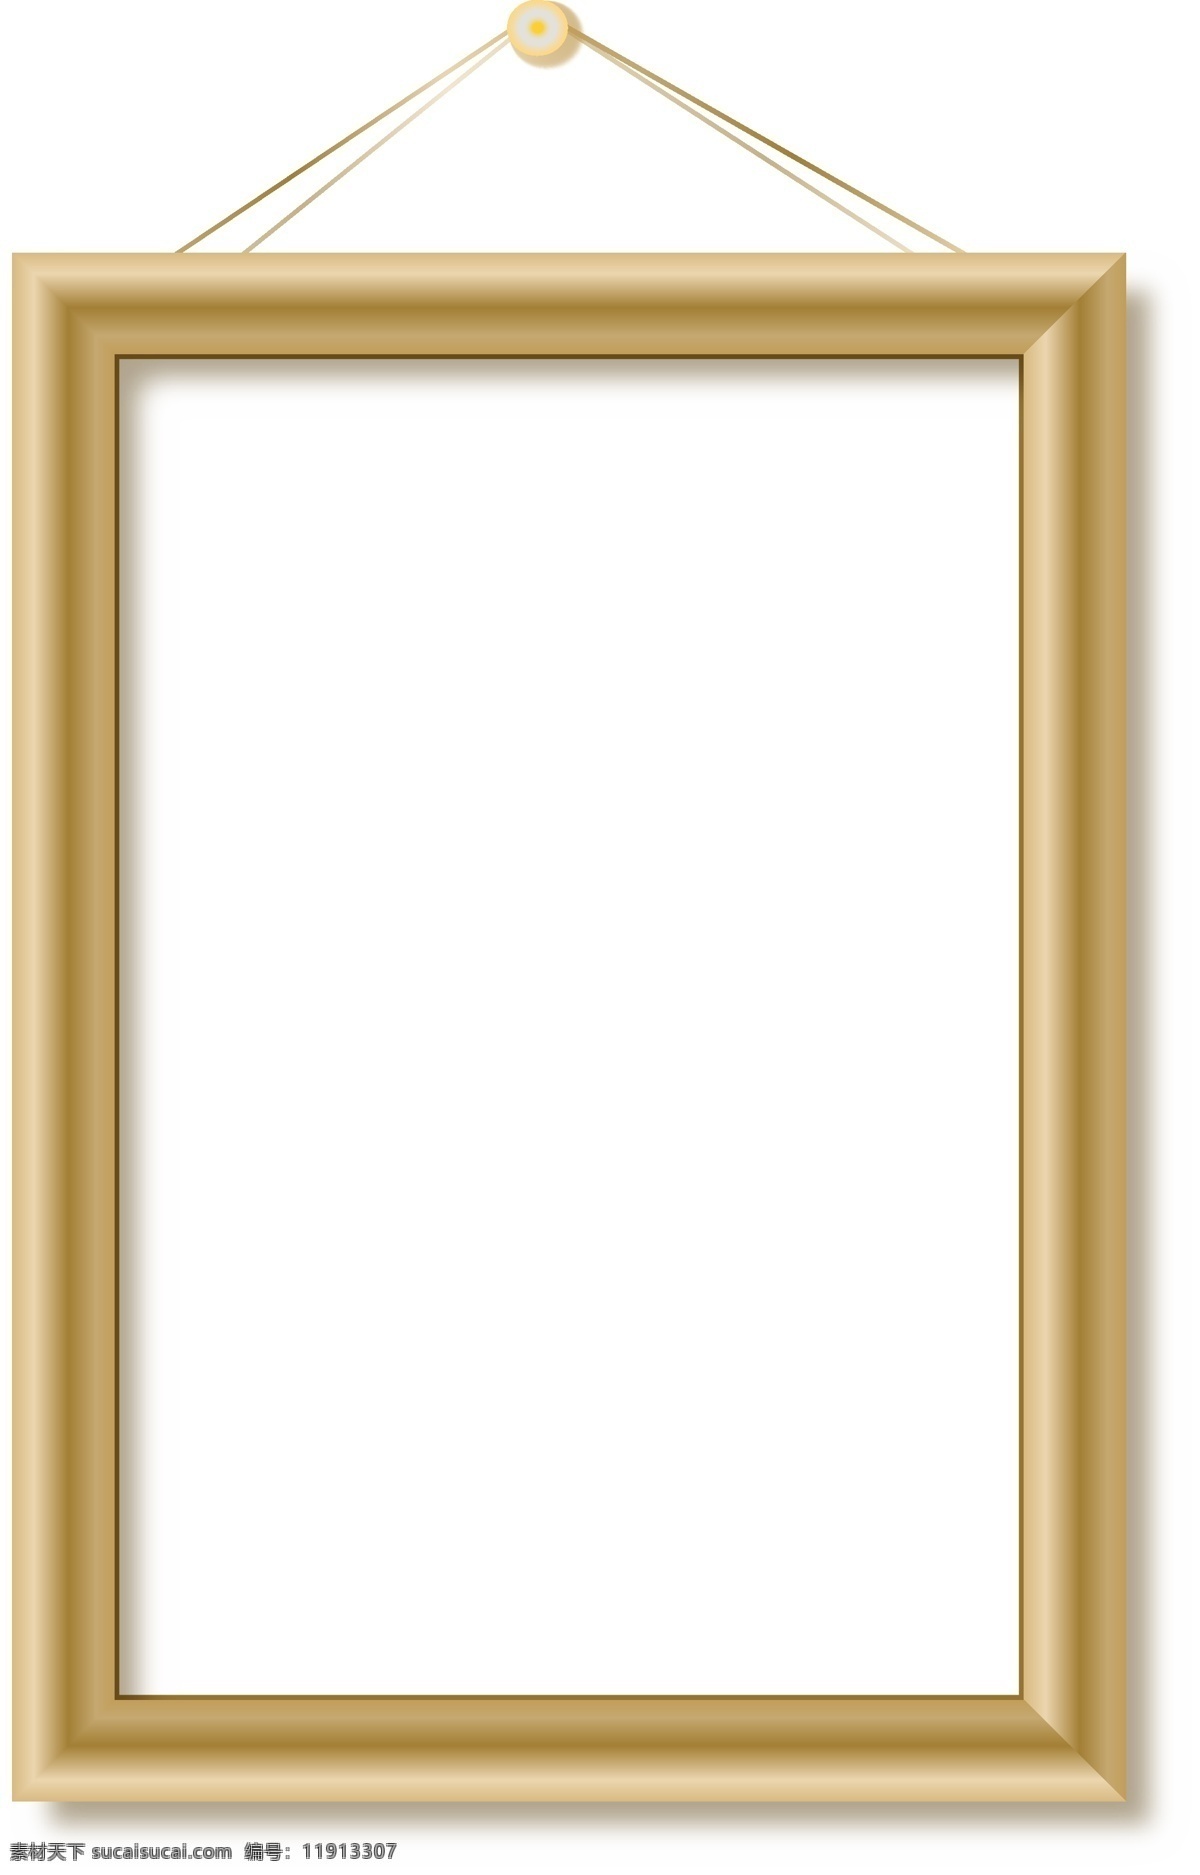 金色 质感 画框 装饰 相框 金色画框 一刷相框 木相框 木质画框 金边相框 装修画框 高档相框 挂画 壁画框 装饰画框